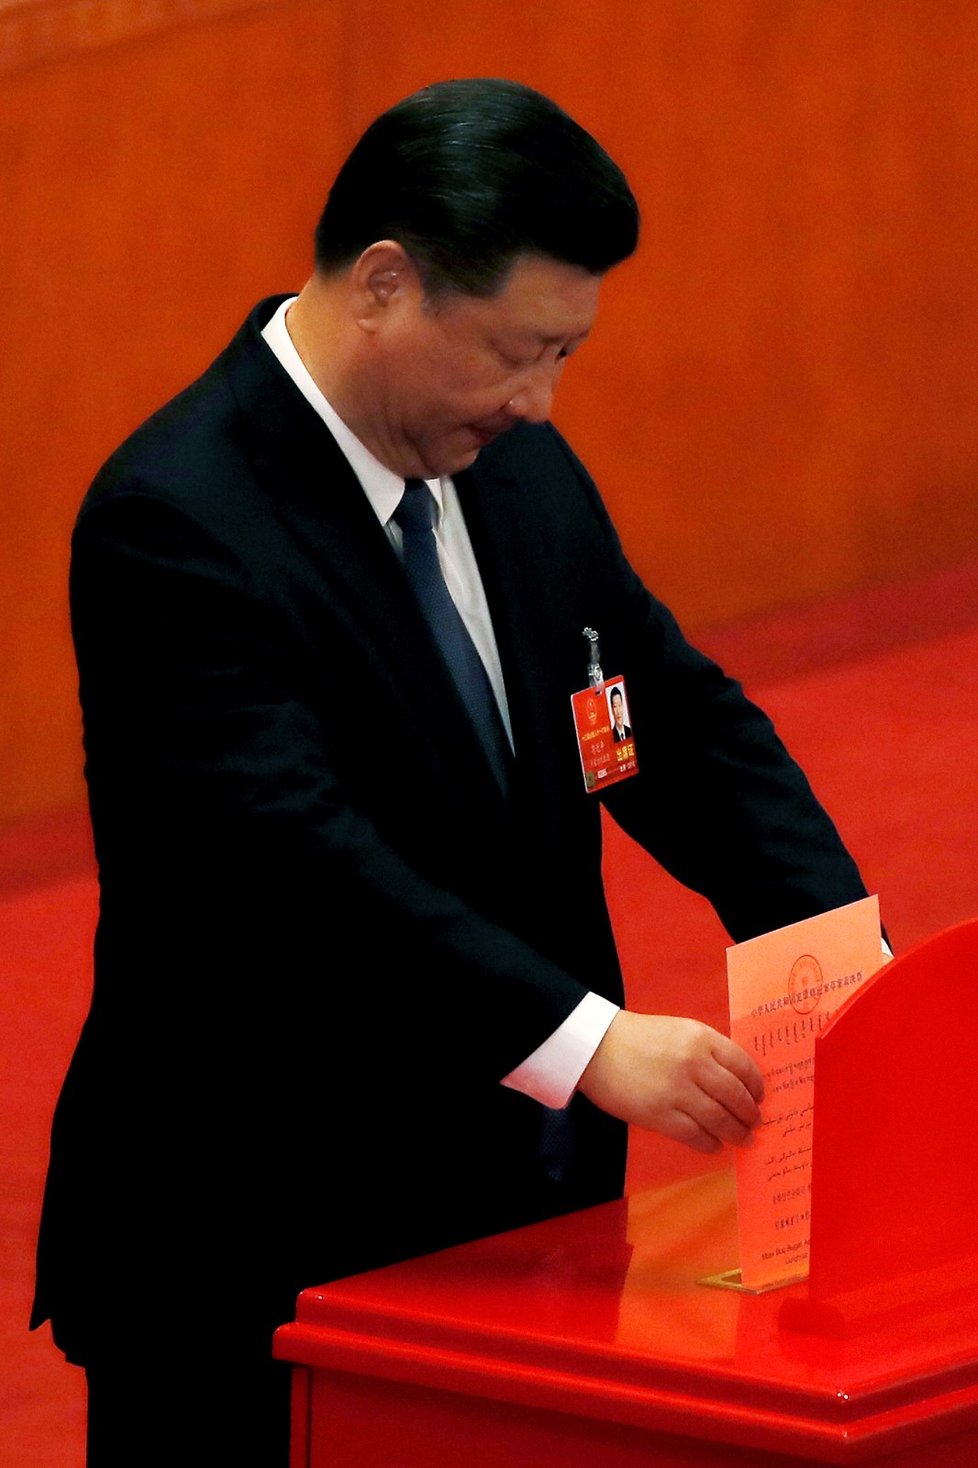 Poslanci před týdnem schválili návrh, kterým se do ústavy zakotvily myšlenky Si Ťin-pchinga o socialismu čínského typu v nové éře.